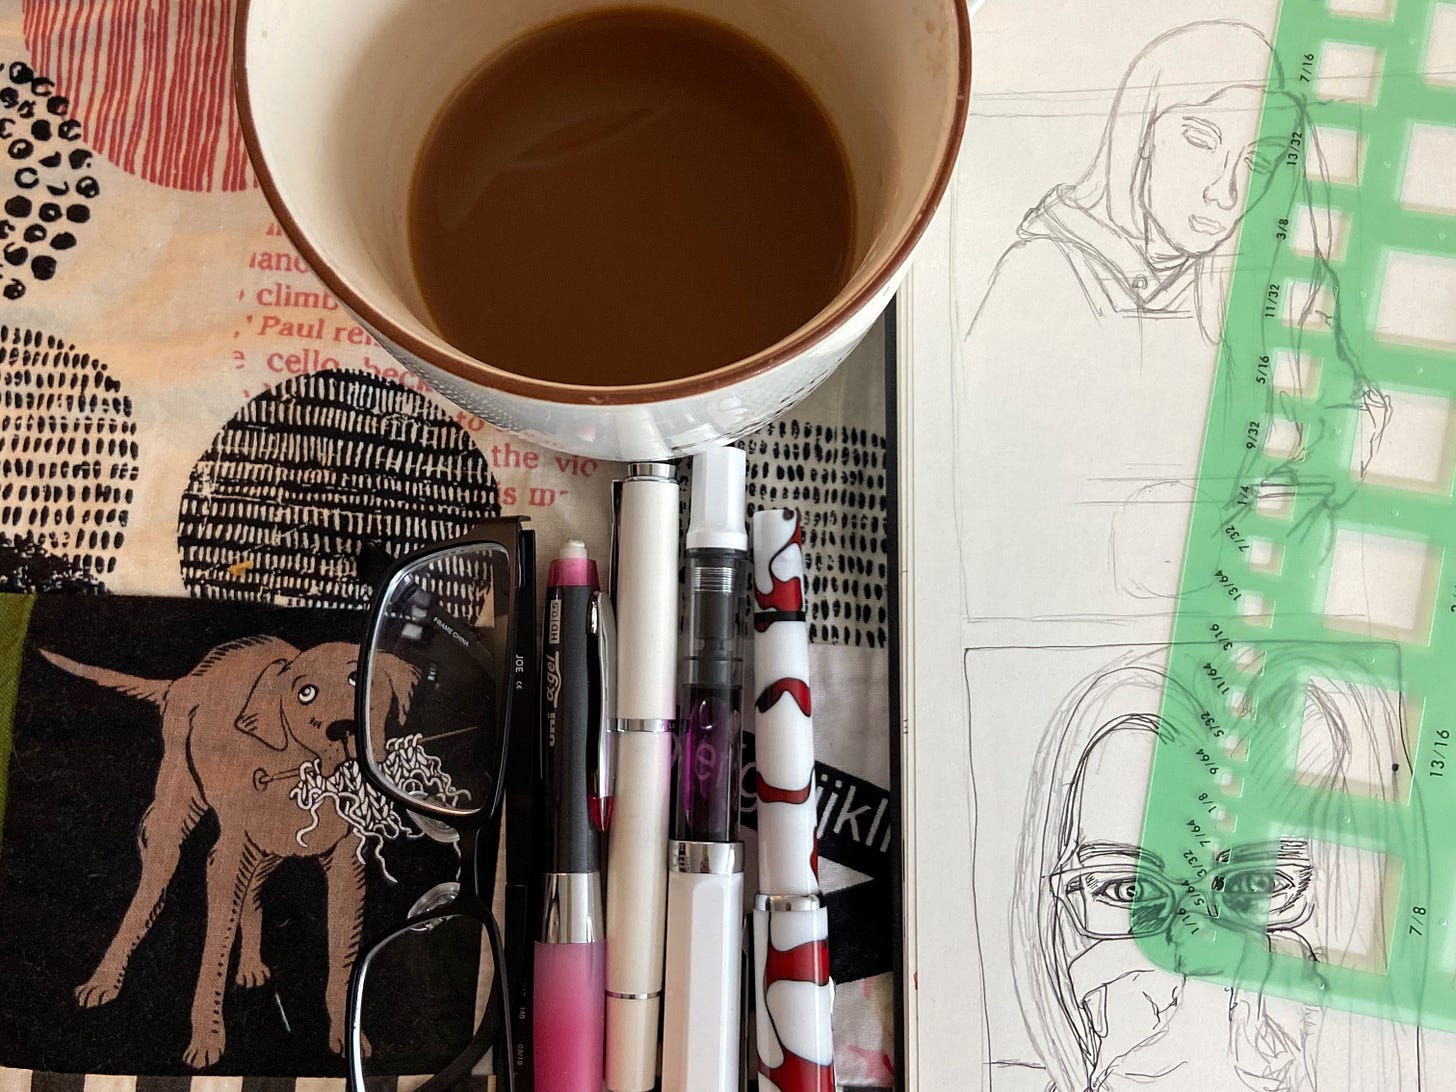 Sketchbook, coffee, and pens